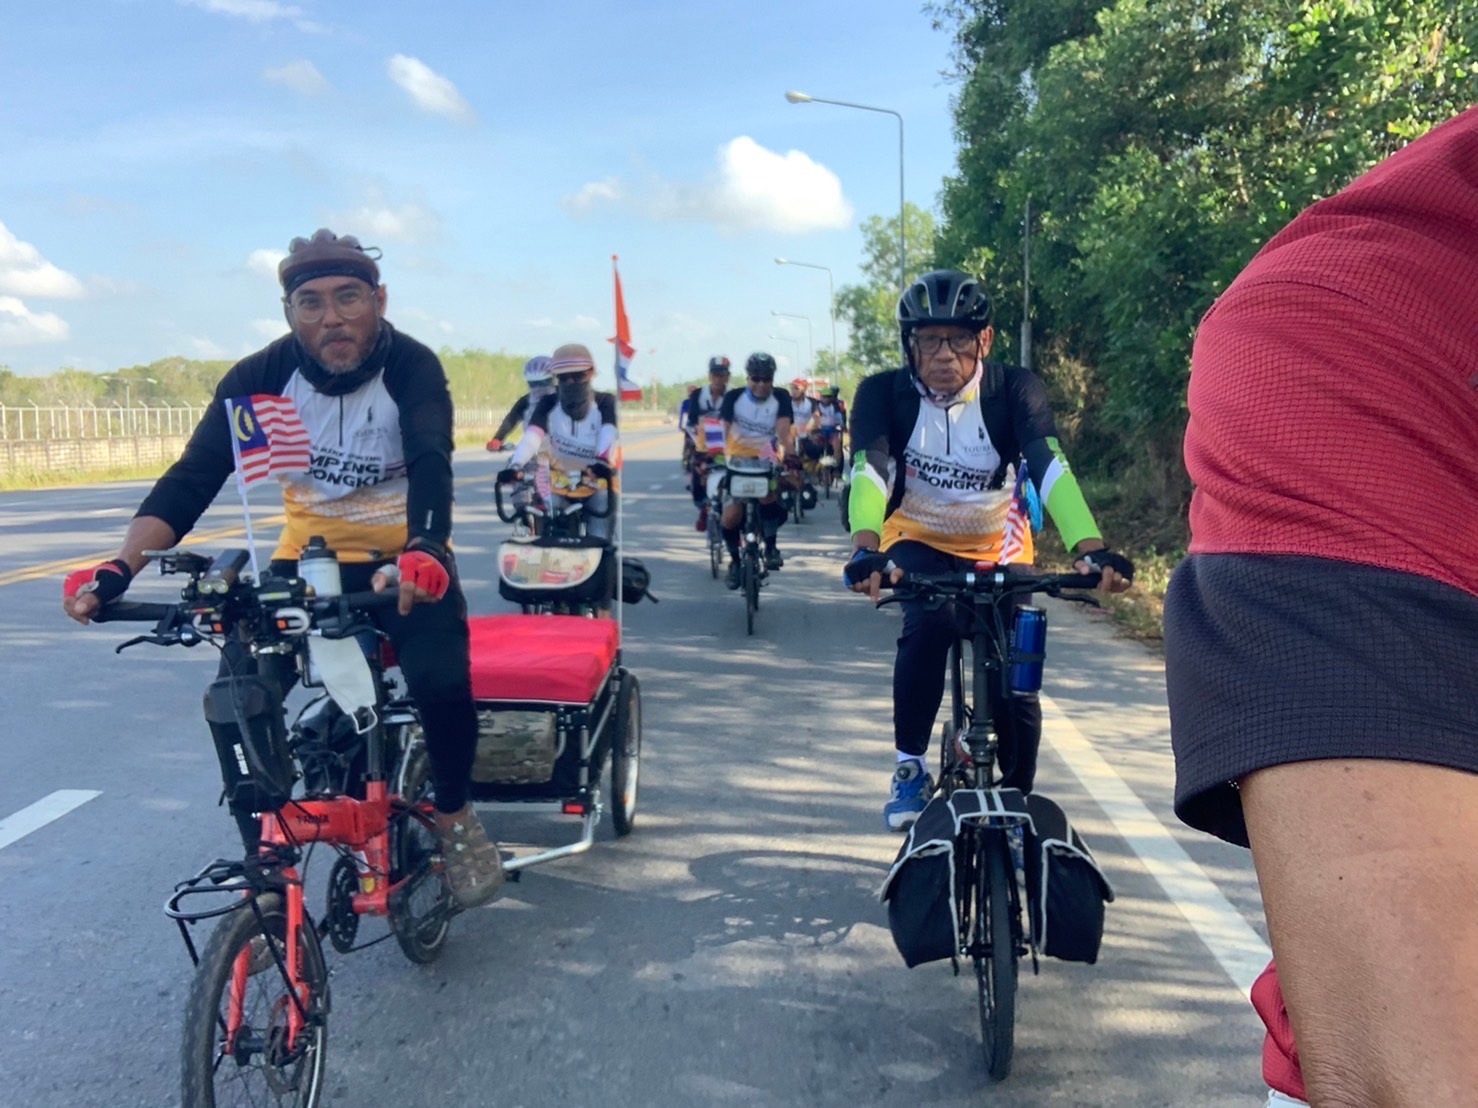 หอการค้าจังหวัดสงขลา จัดกิจกรรมปล่อยตัวนักปั่นในโครงการปั่นจักรยาน “พับใจให้กัน สานสัมพันธ์ไทย-มาเลเซีย”